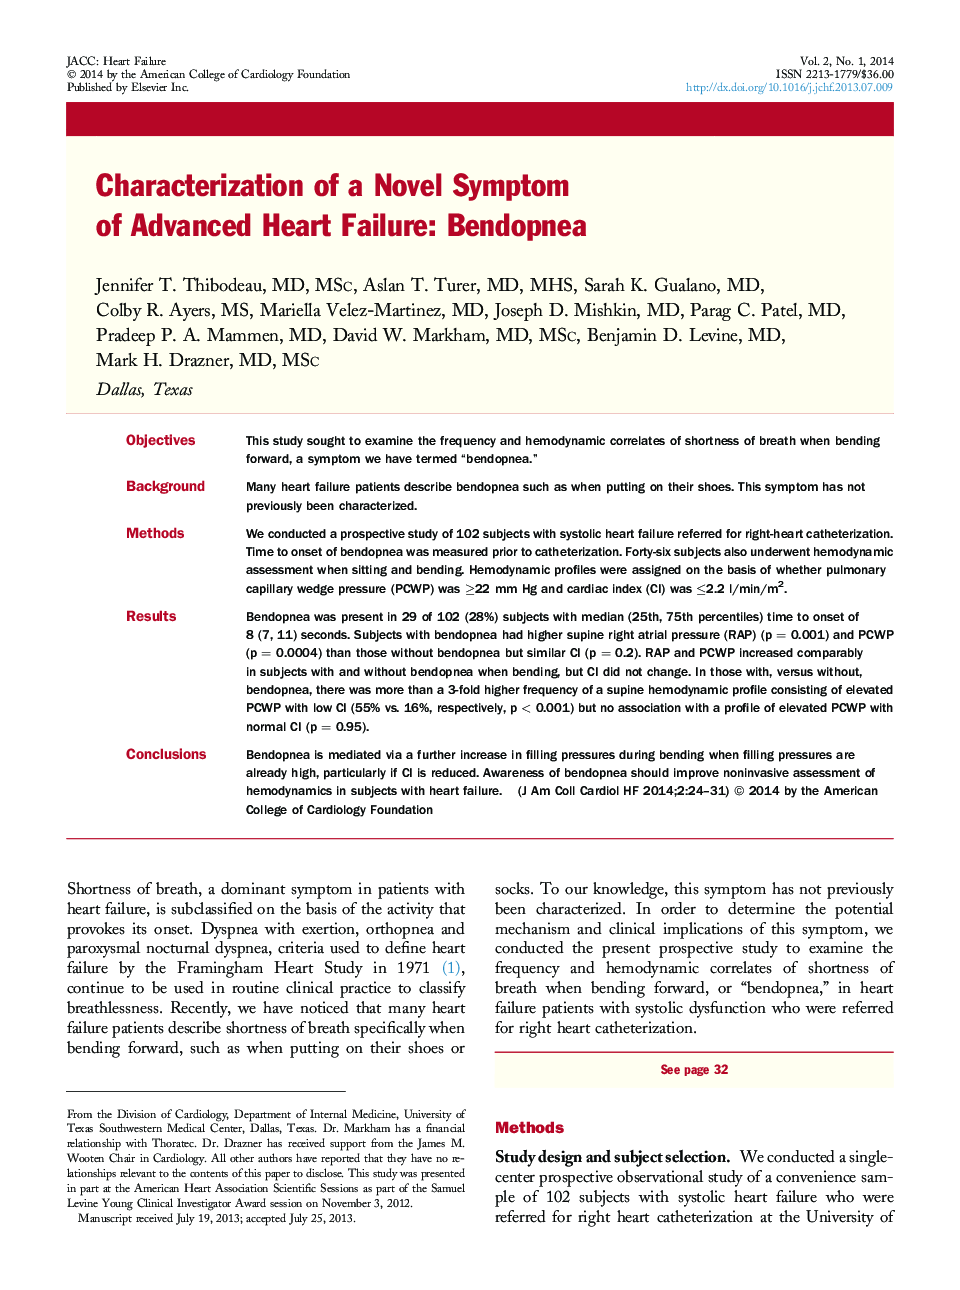 Characterization of a Novel Symptom of Advanced Heart Failure: Bendopnea 